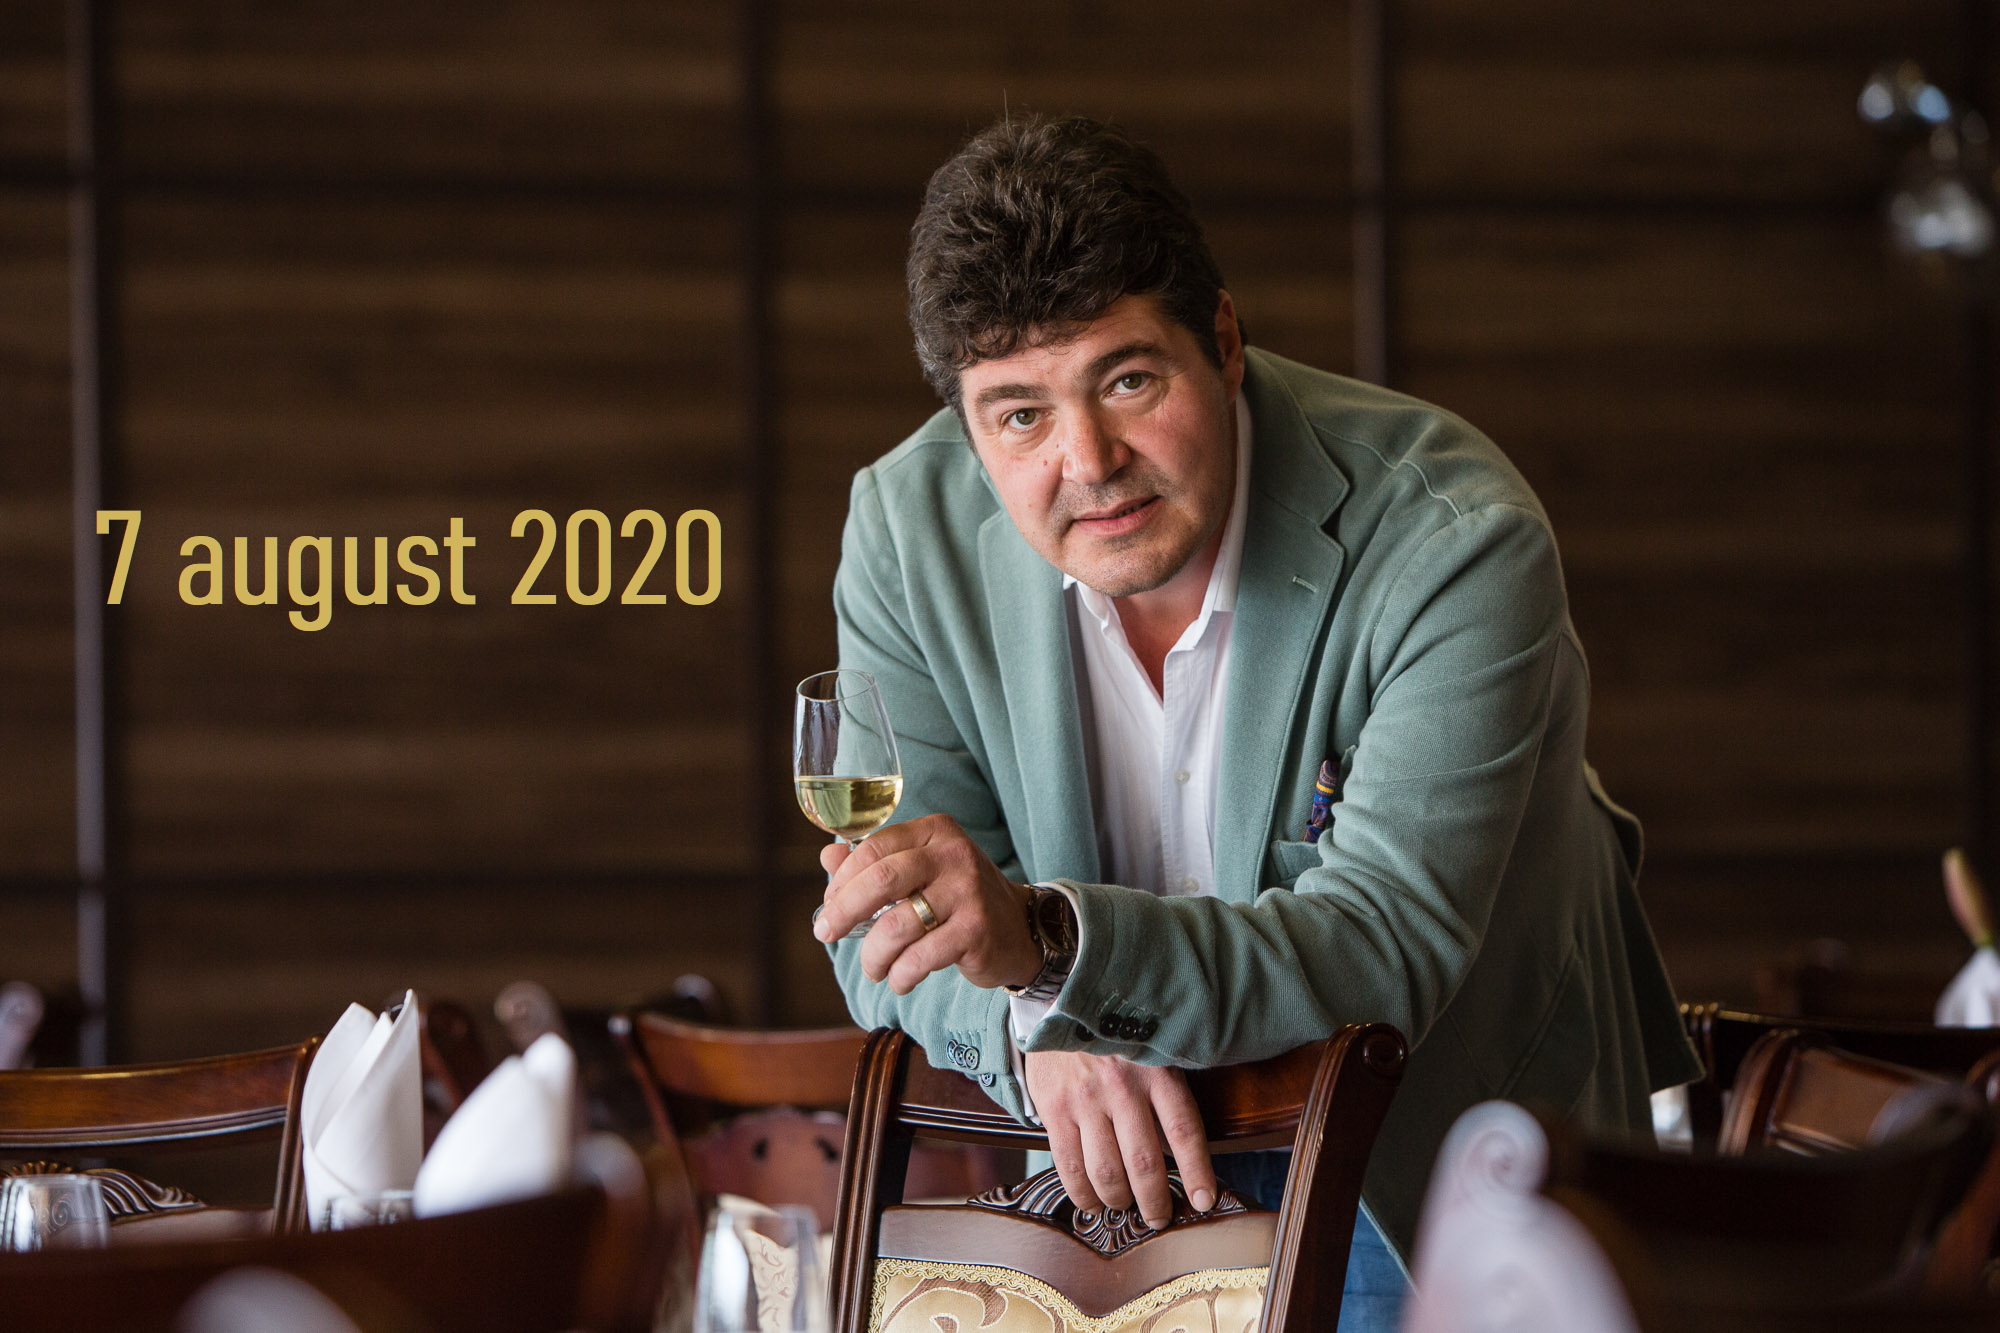 07 - 09 august 2020 – Ce vinuri bem în acest weekend, 3 vinuri pentru 3 seri. Recomandările lui Cătălin Păduraru, Preşedintele VINARIUM International Wine Contest